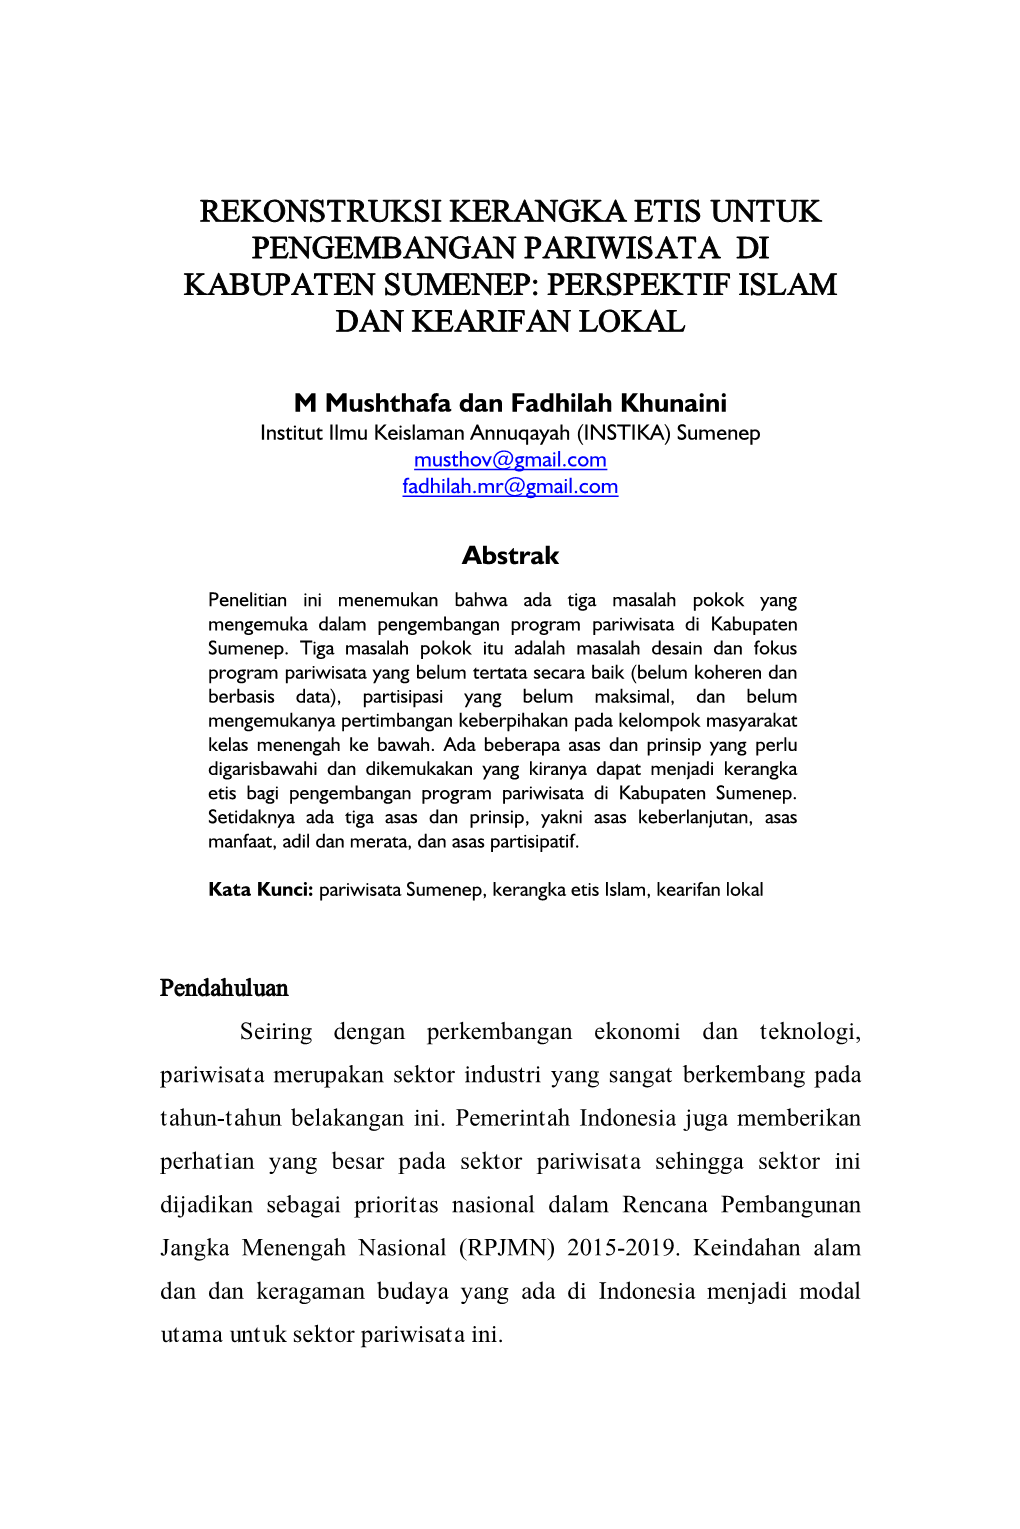 Rekonstruksi Kerangka Etis Untuk Pengembangan Pariwisata Di Kabupaten Sumenep: Perspektif Islam Dan Kearifan Lokal